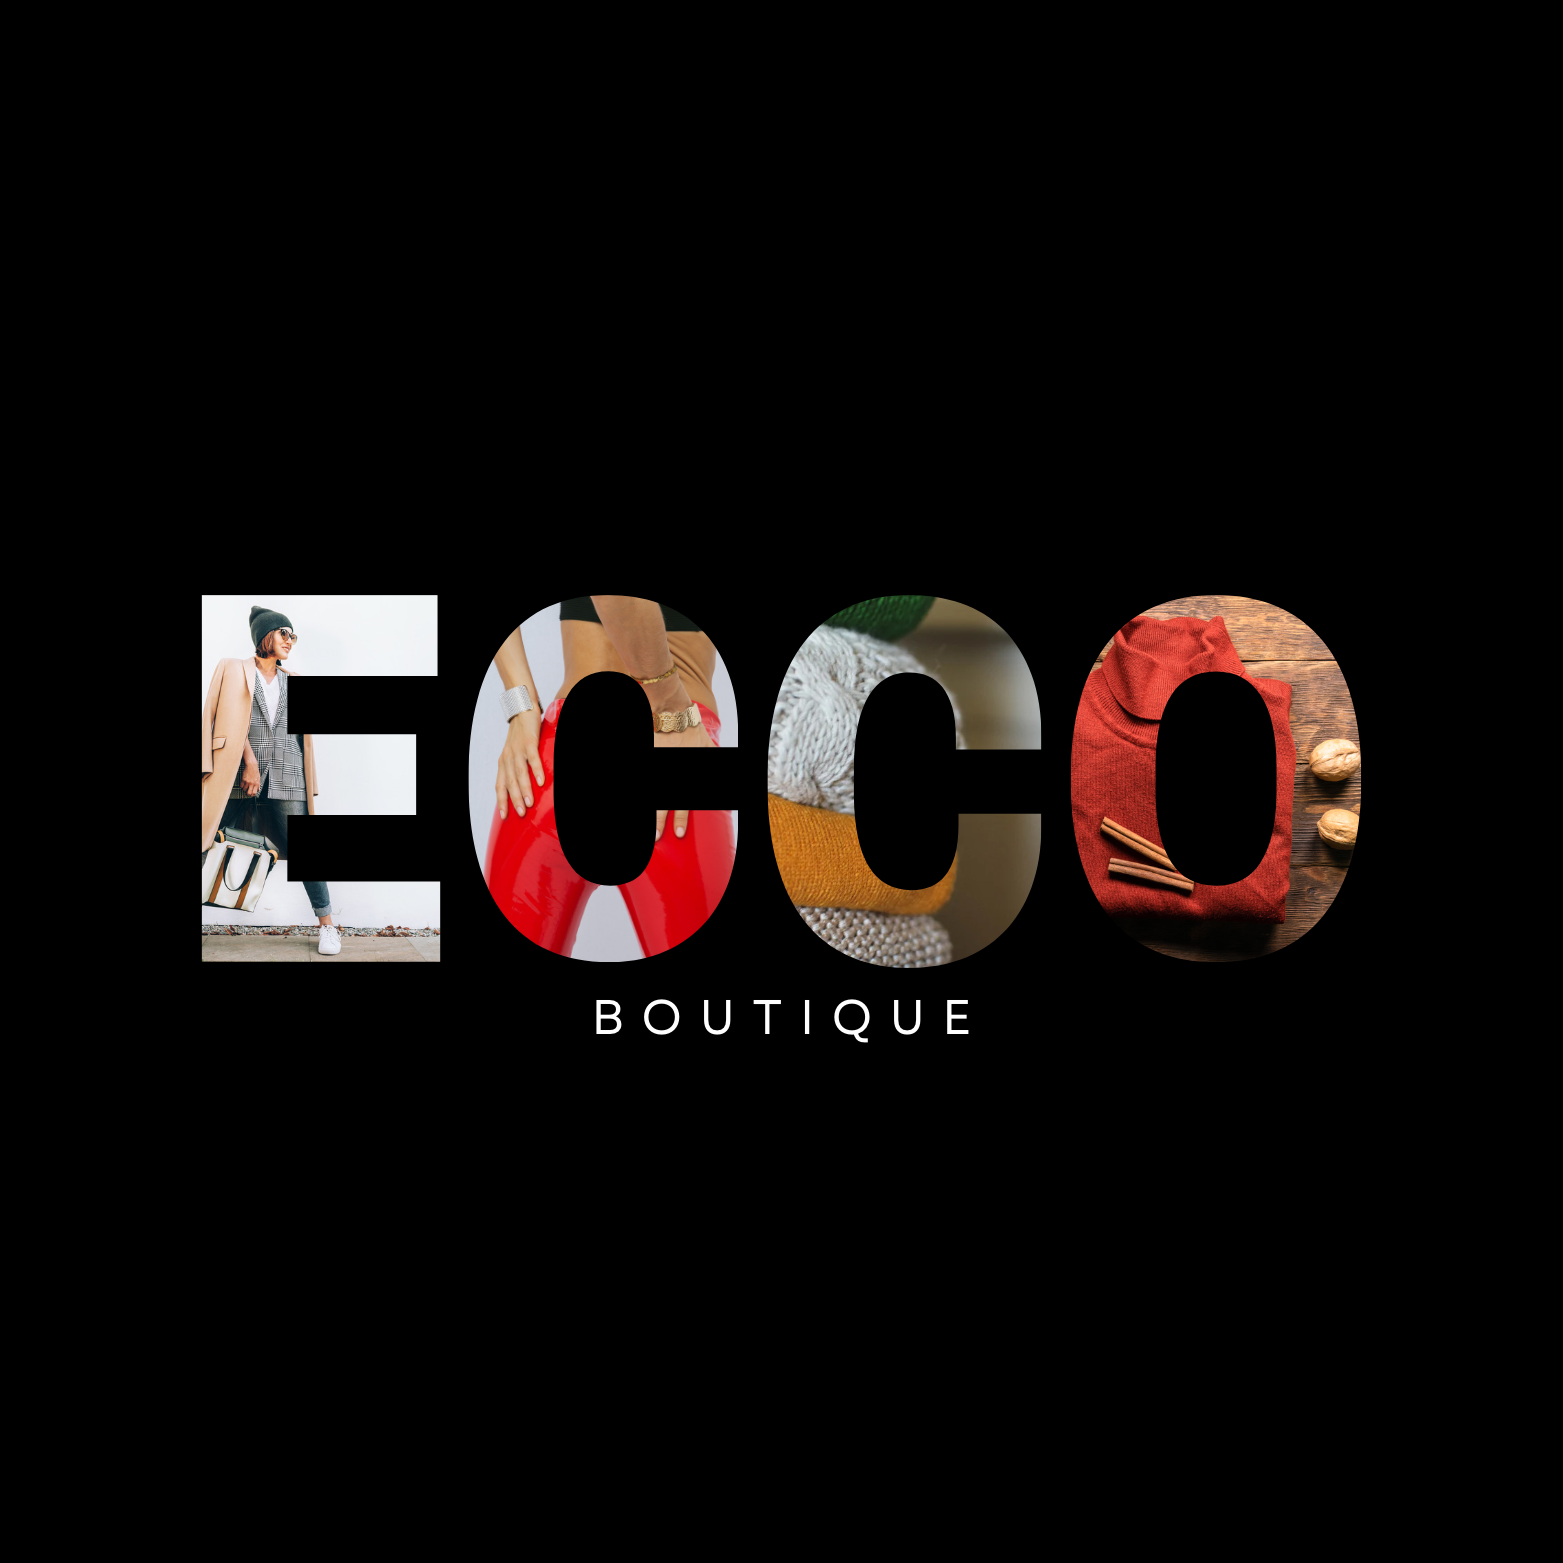 ECCO Boutique